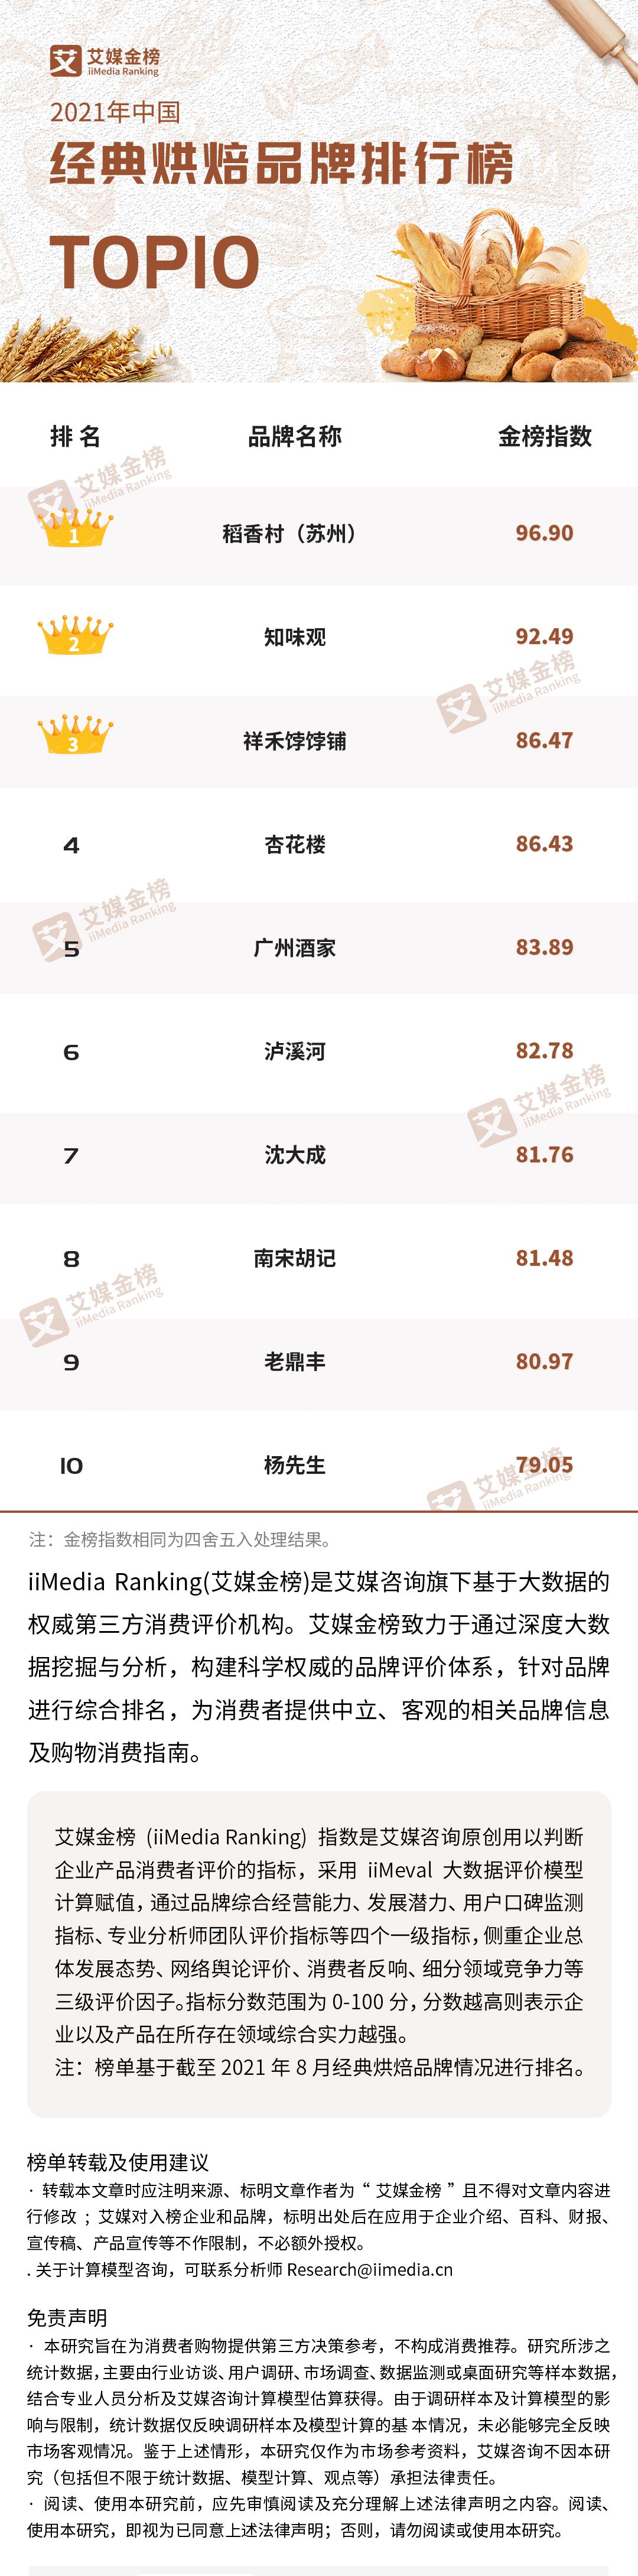 2021年中国经典烘焙品牌排行榜Top10